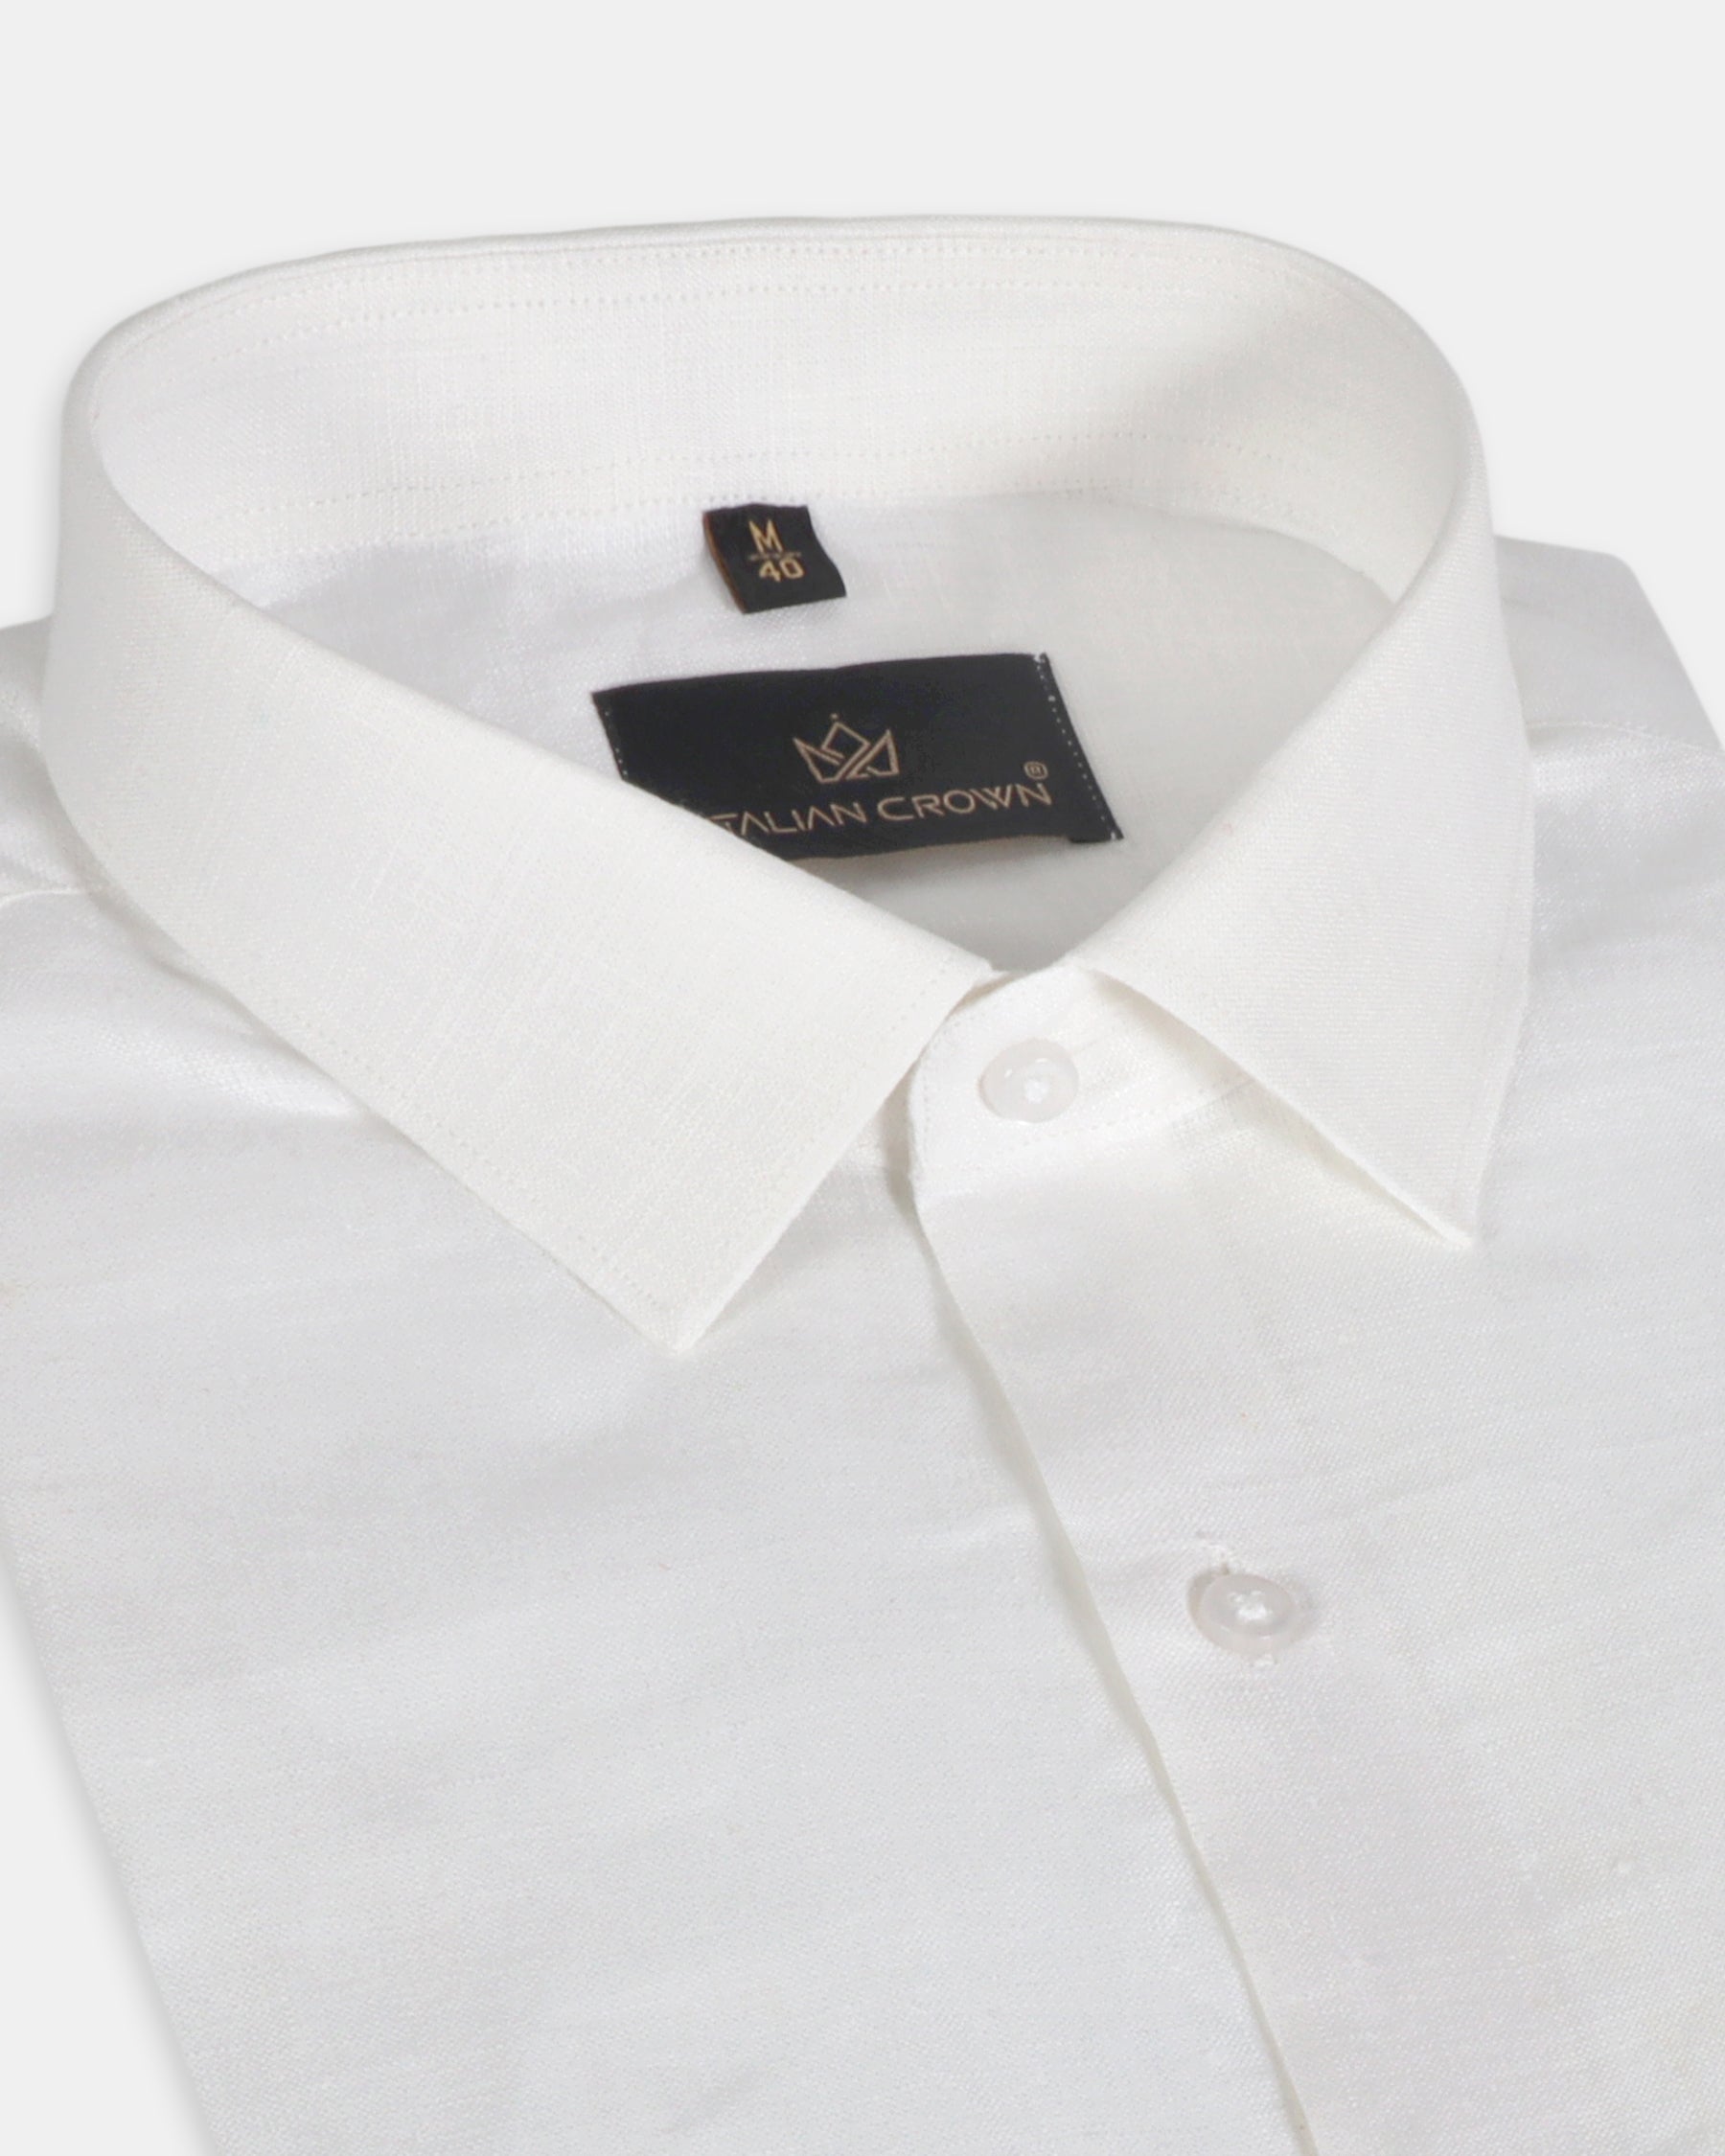 Plain White Linen Regular Fit Cotton Shirt For Men